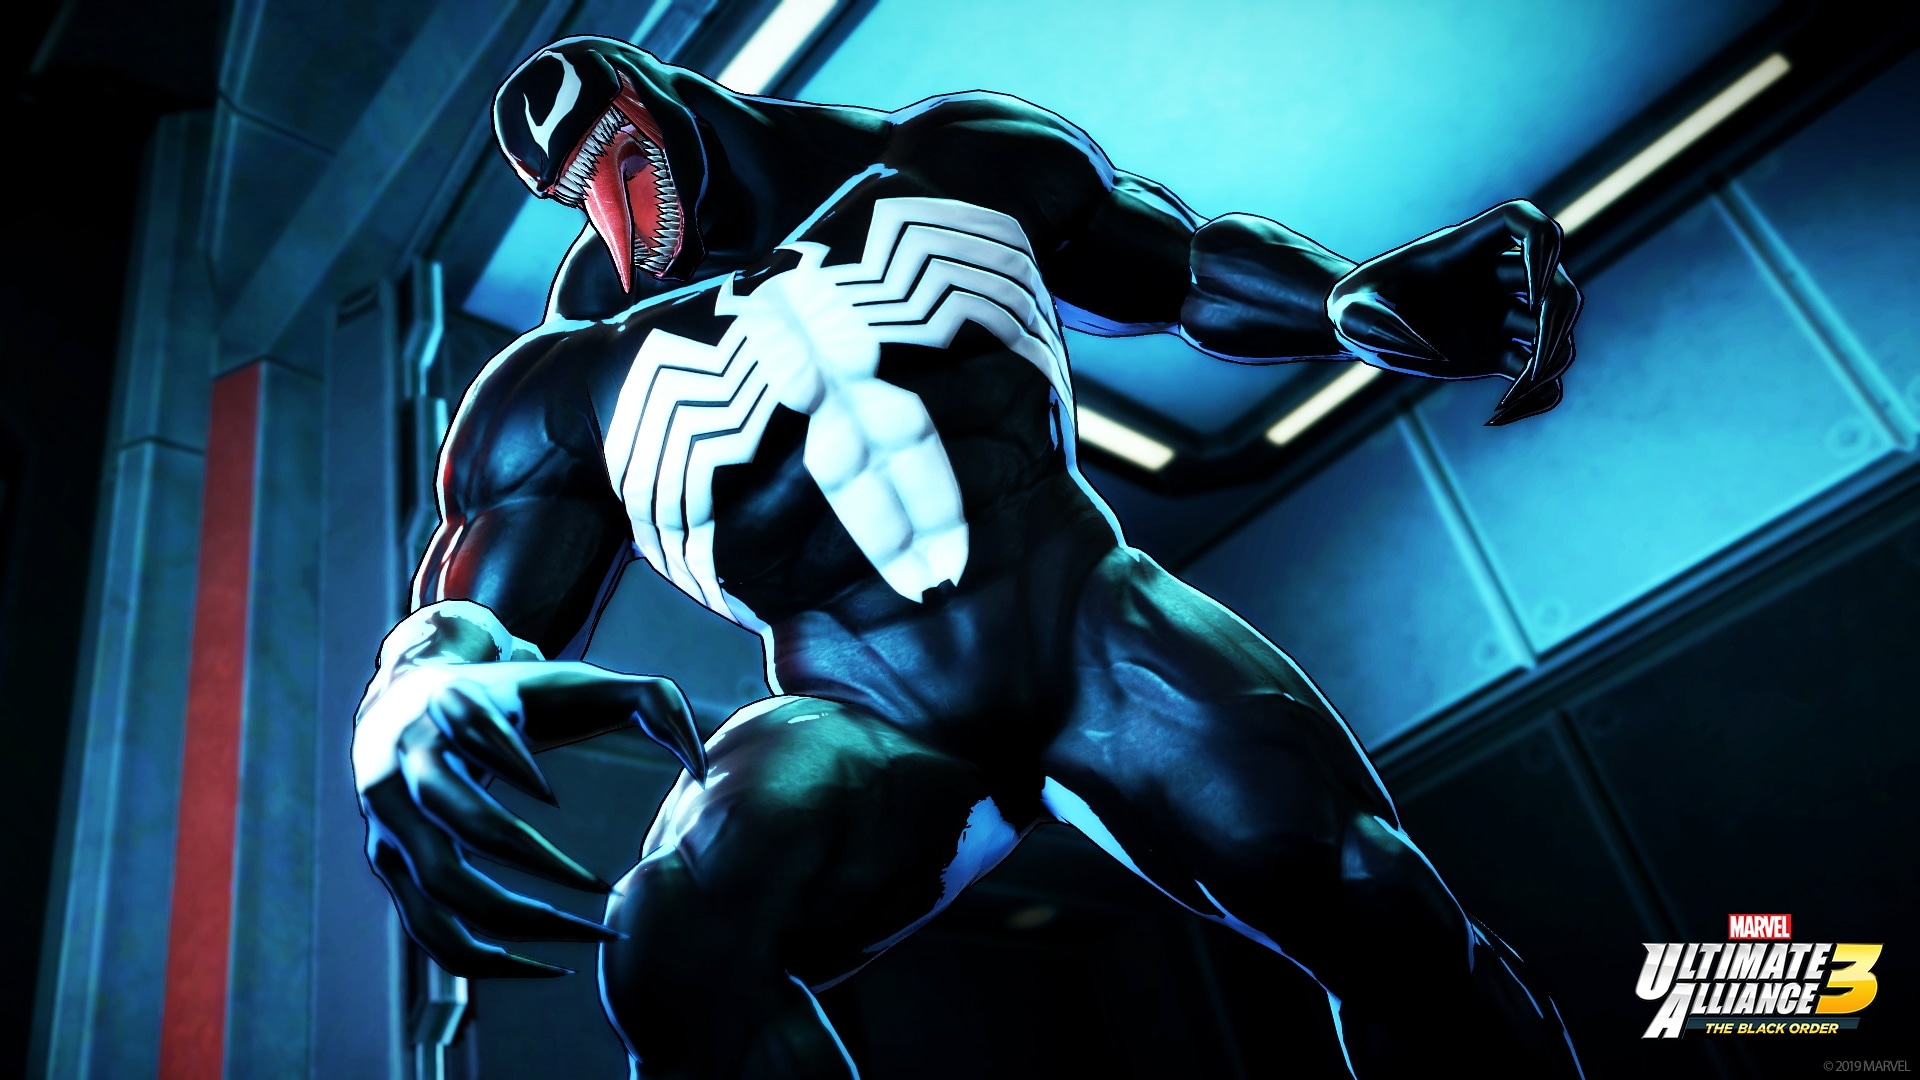 Free download wallpaper Venom, Video Game, Marvel Ultimate Alliance 3: The Black Order on your PC desktop